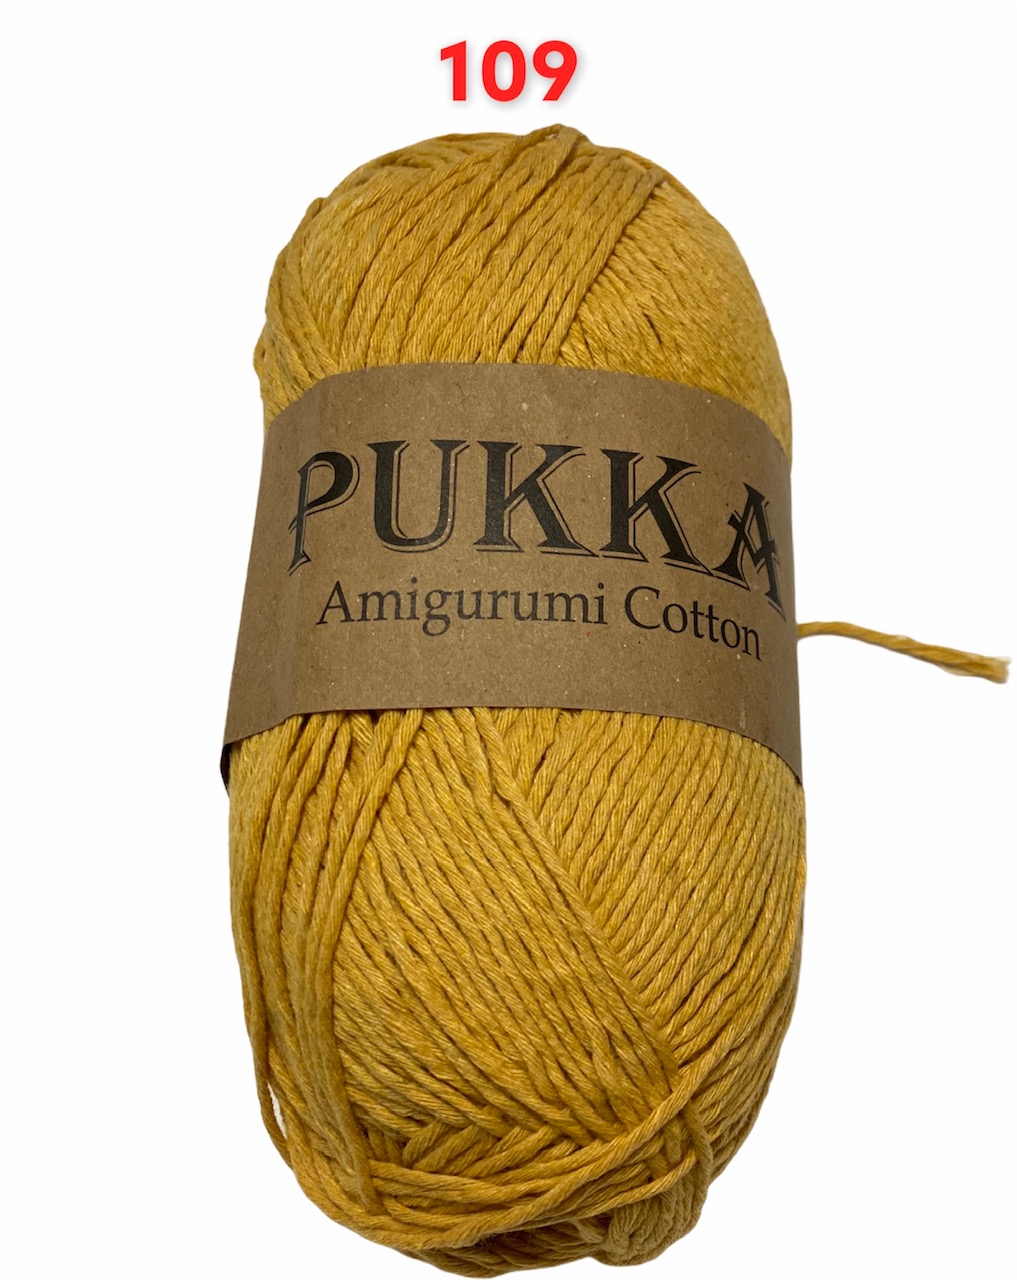 PUKKA Amigurumi Cotton 100g,109